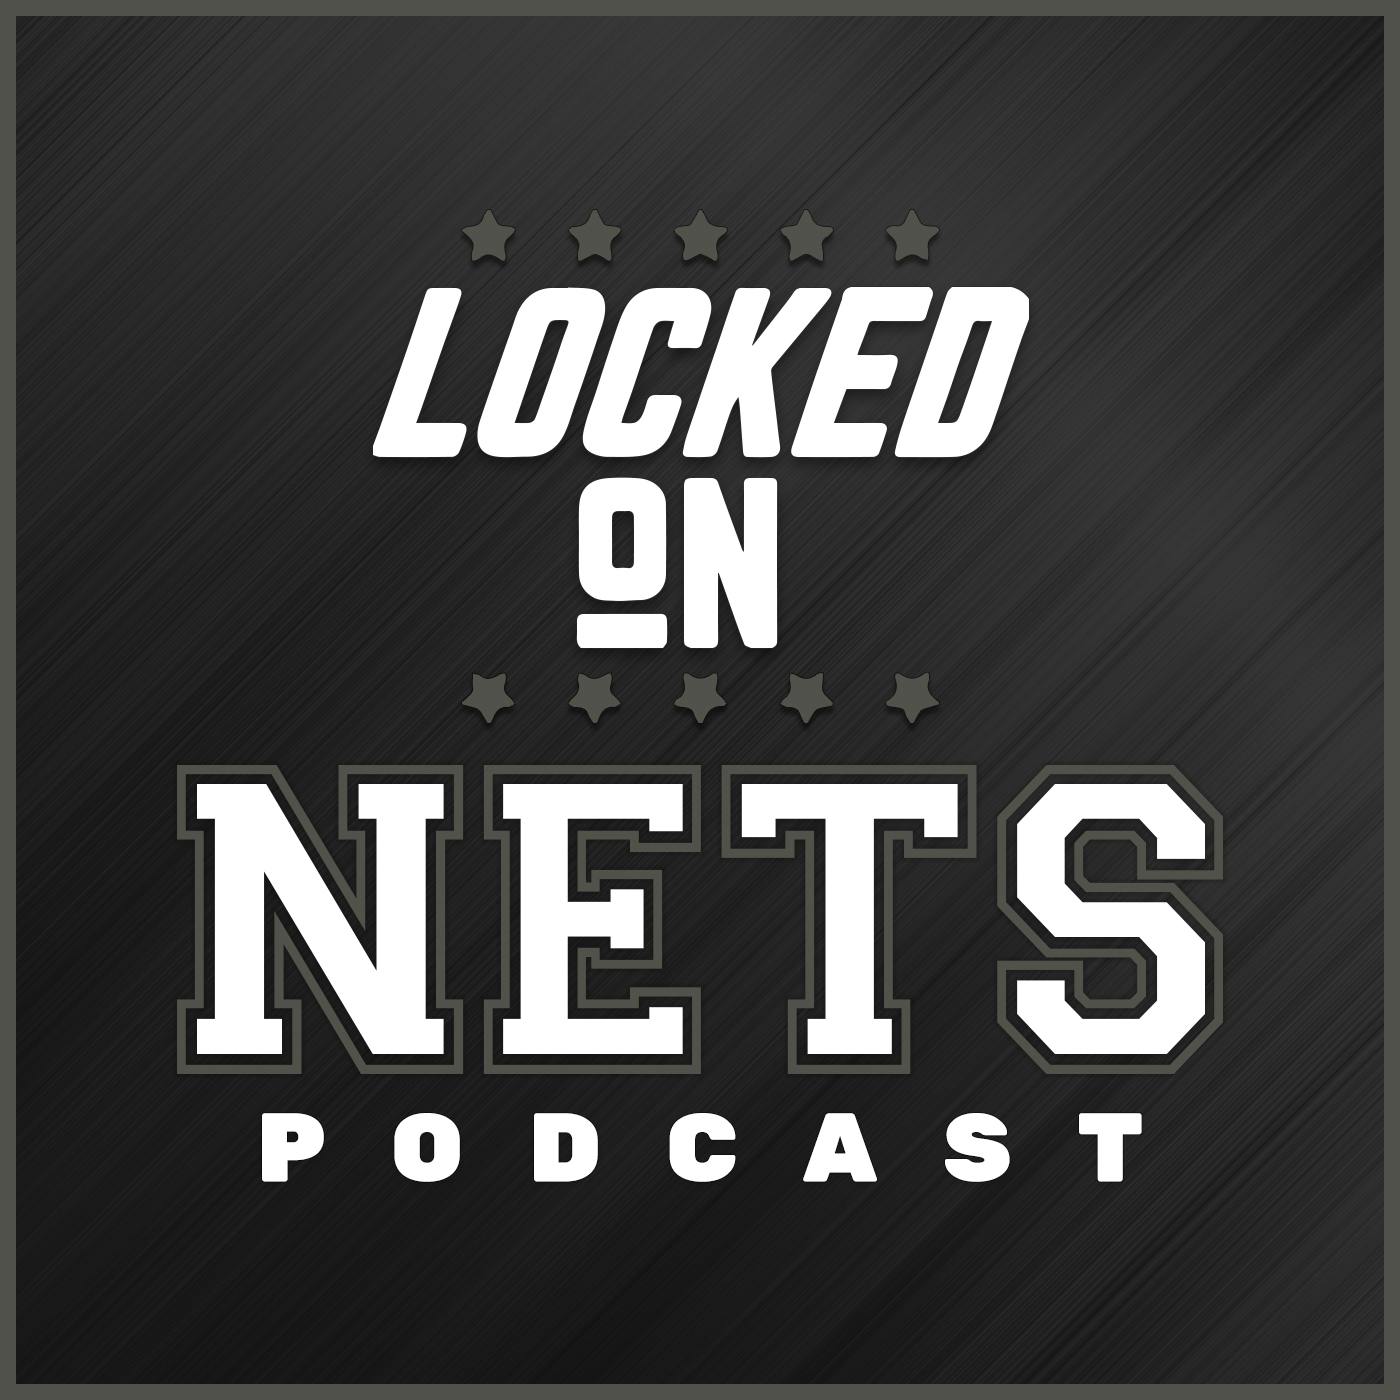 New Jersey Nets writers remember the dawn of Jason Kidd - NetsDaily